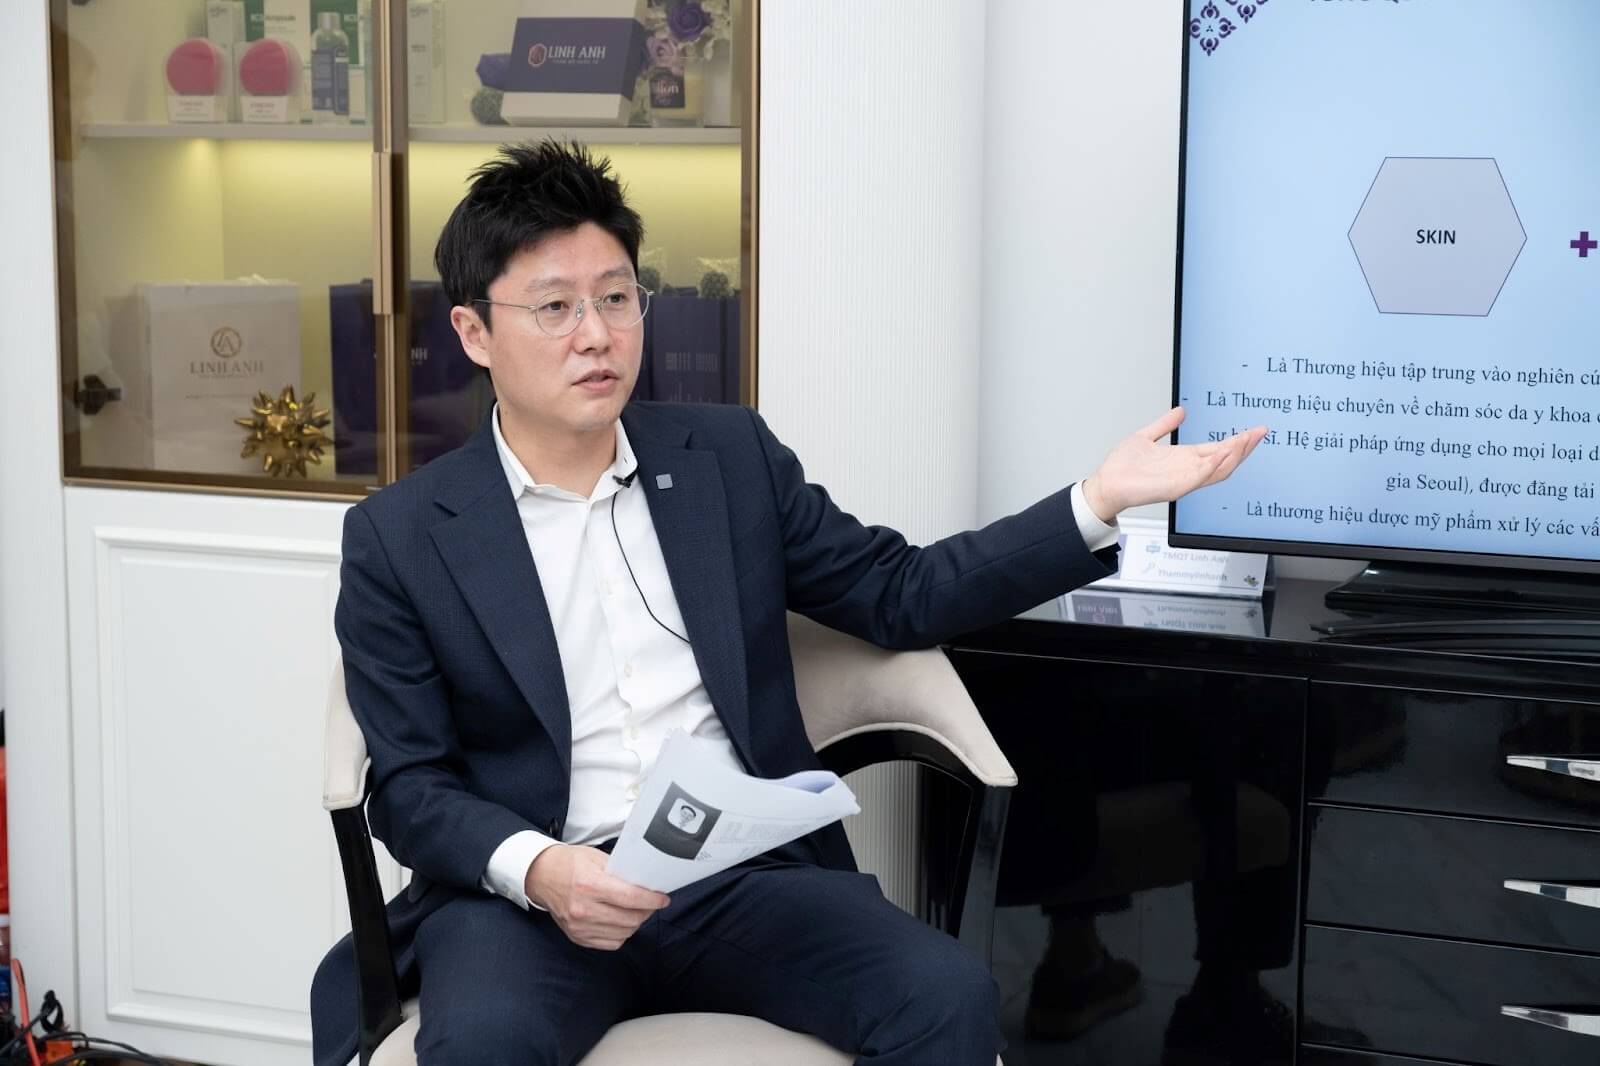 Chuyên gia thẩm mỹ Quốc tế Lee Jung Yup chia sẻ về chuyên đề da liễu tại TMV QT Linh Anh